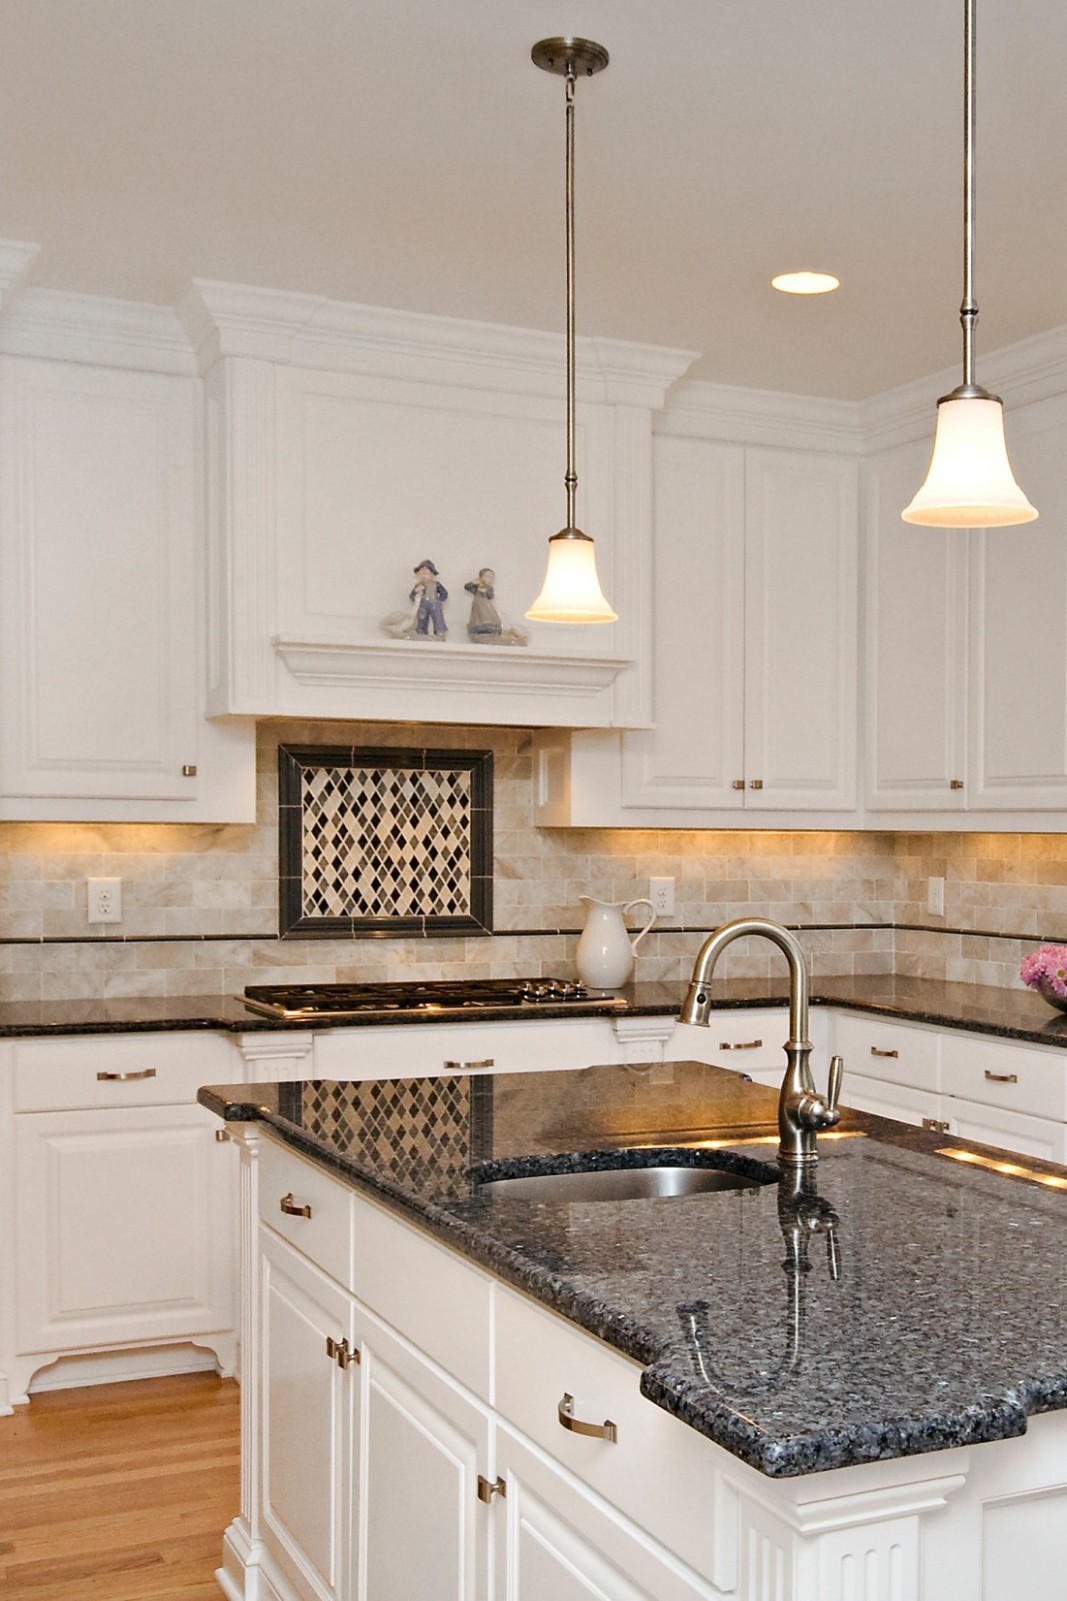 8+ Popular Blue Granite Kitchen Countertops Design Ideas - what color granite countertops go with white cabinets?